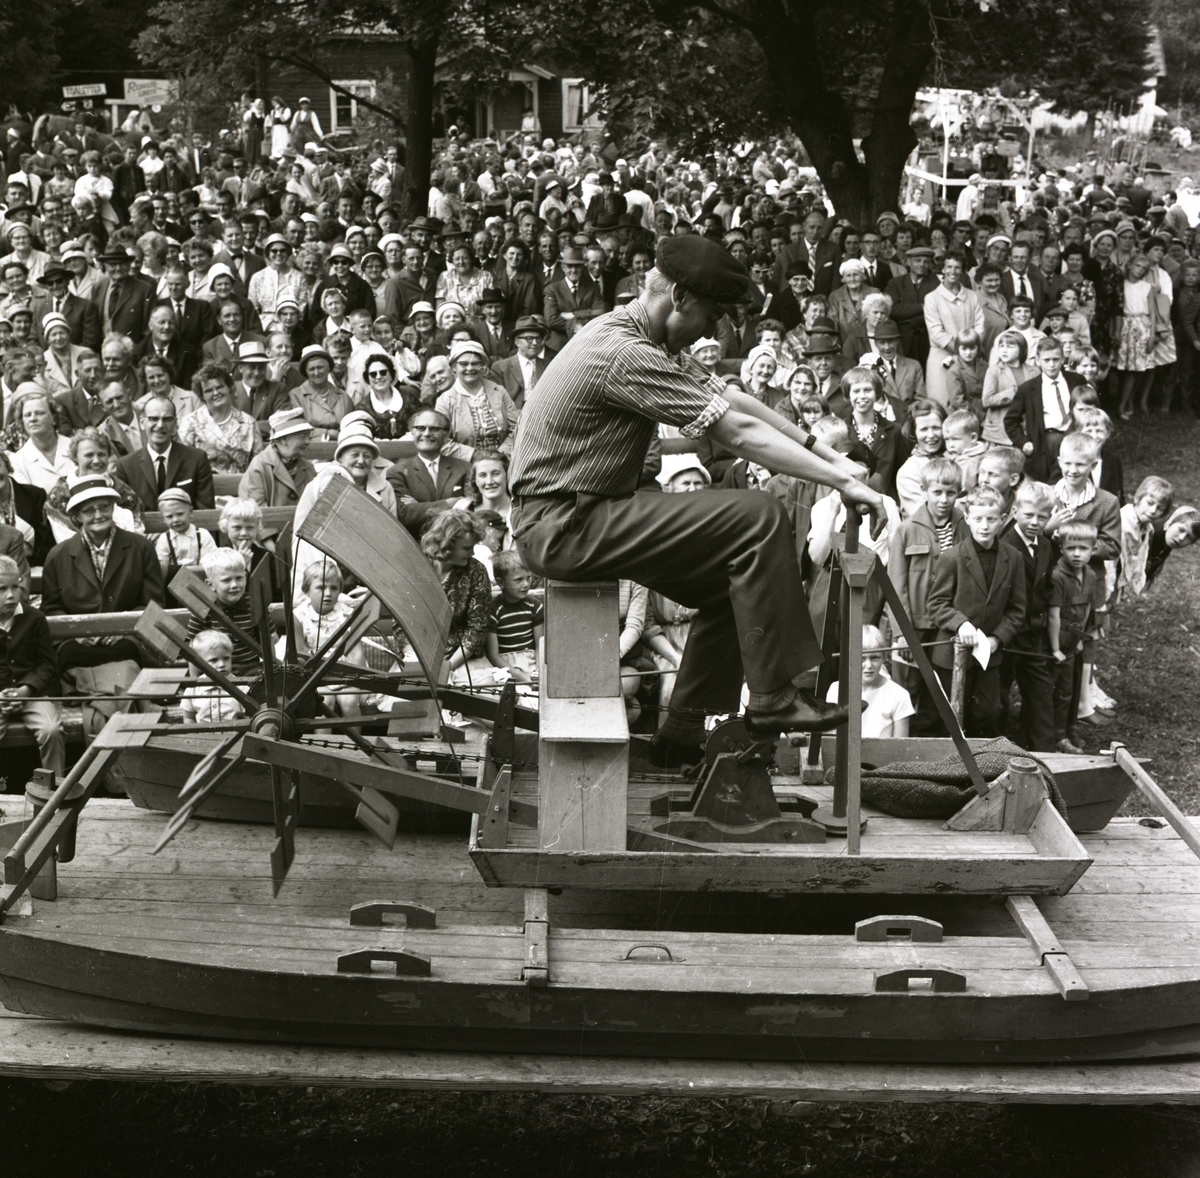 En man uppträder sittandes på en trampbåt i samband med Hembygdsfestens karneval i Rengsjö, 22 juli 1962.